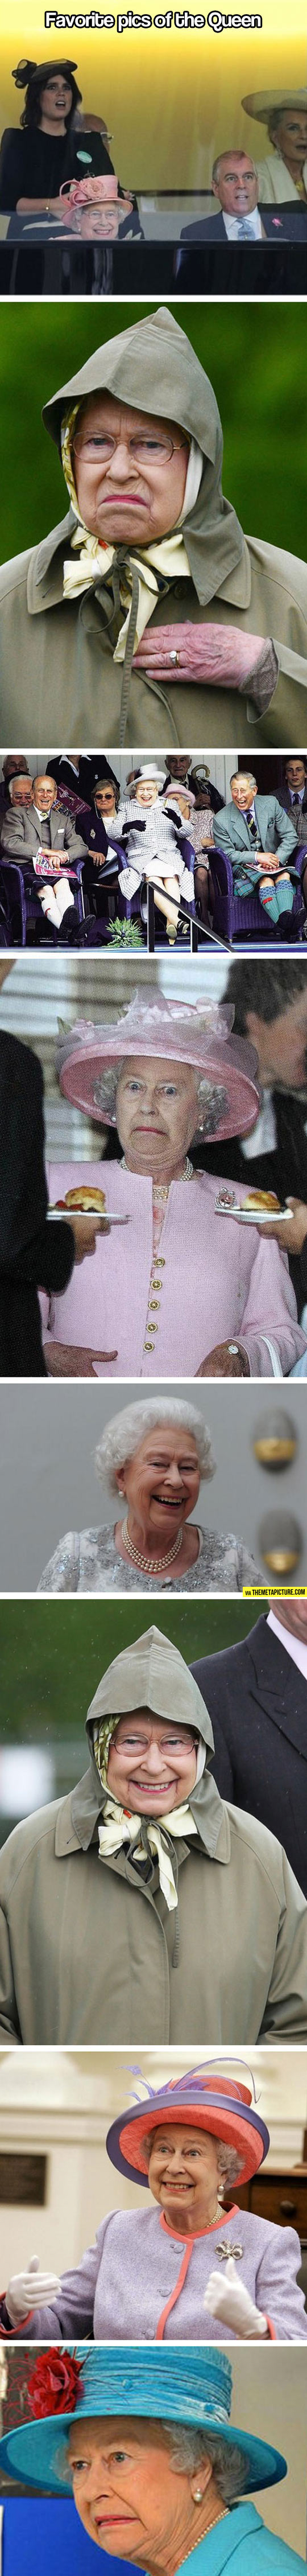 Best Pictures Of The Queen